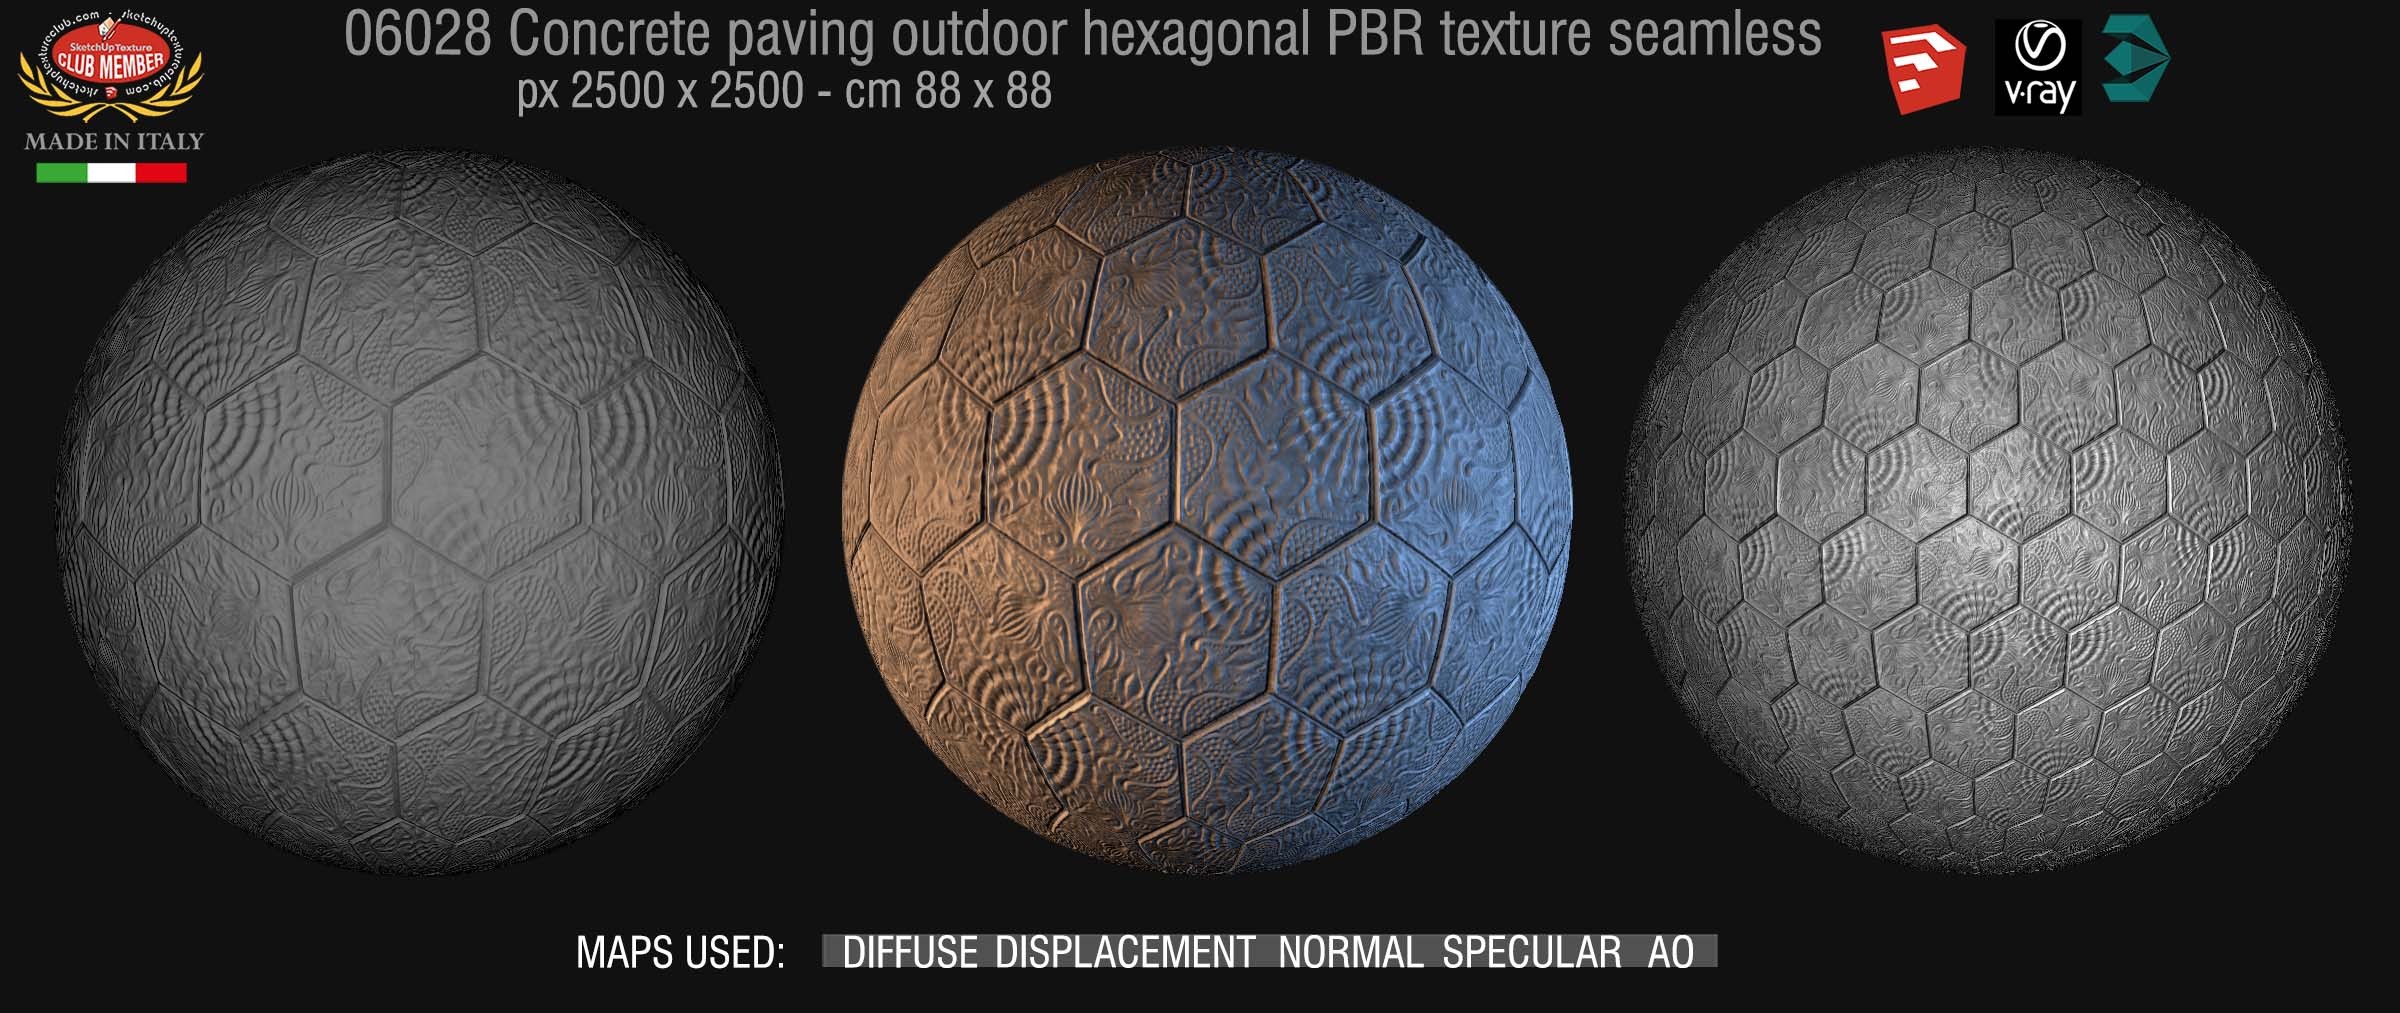 06028 Concrete paving outdoor hexagonal PBR texture seamless DEMO